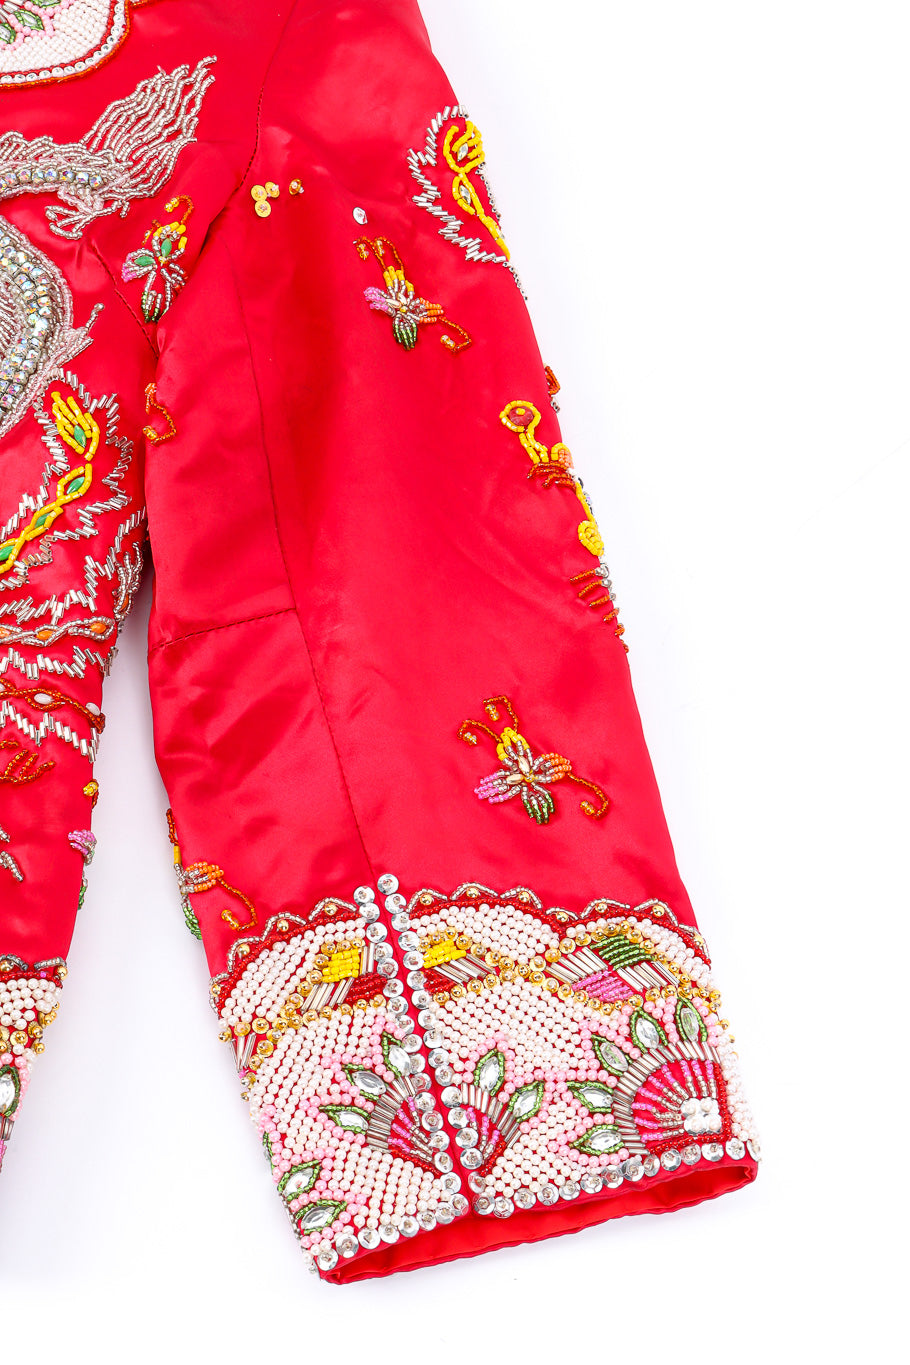 Embellished silk dragon jacket sleeve detail @recessla